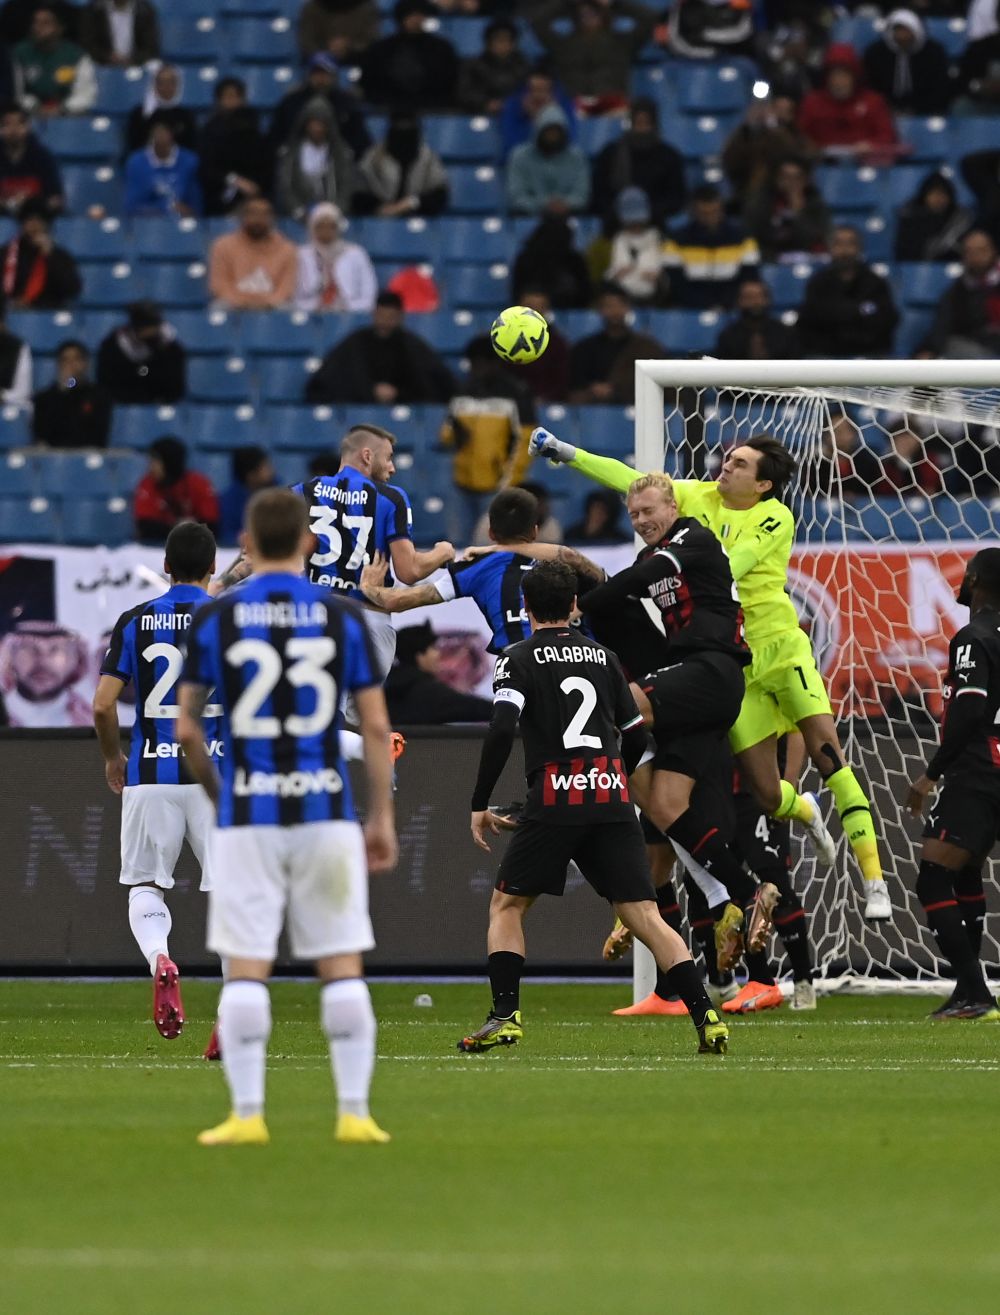 Ce note a primit Tătărușanu, după ce Milan a pierdut cu 0-3 Supercupa Italiei în fața lui Inter: ”A evitat agravarea problemelor”_2